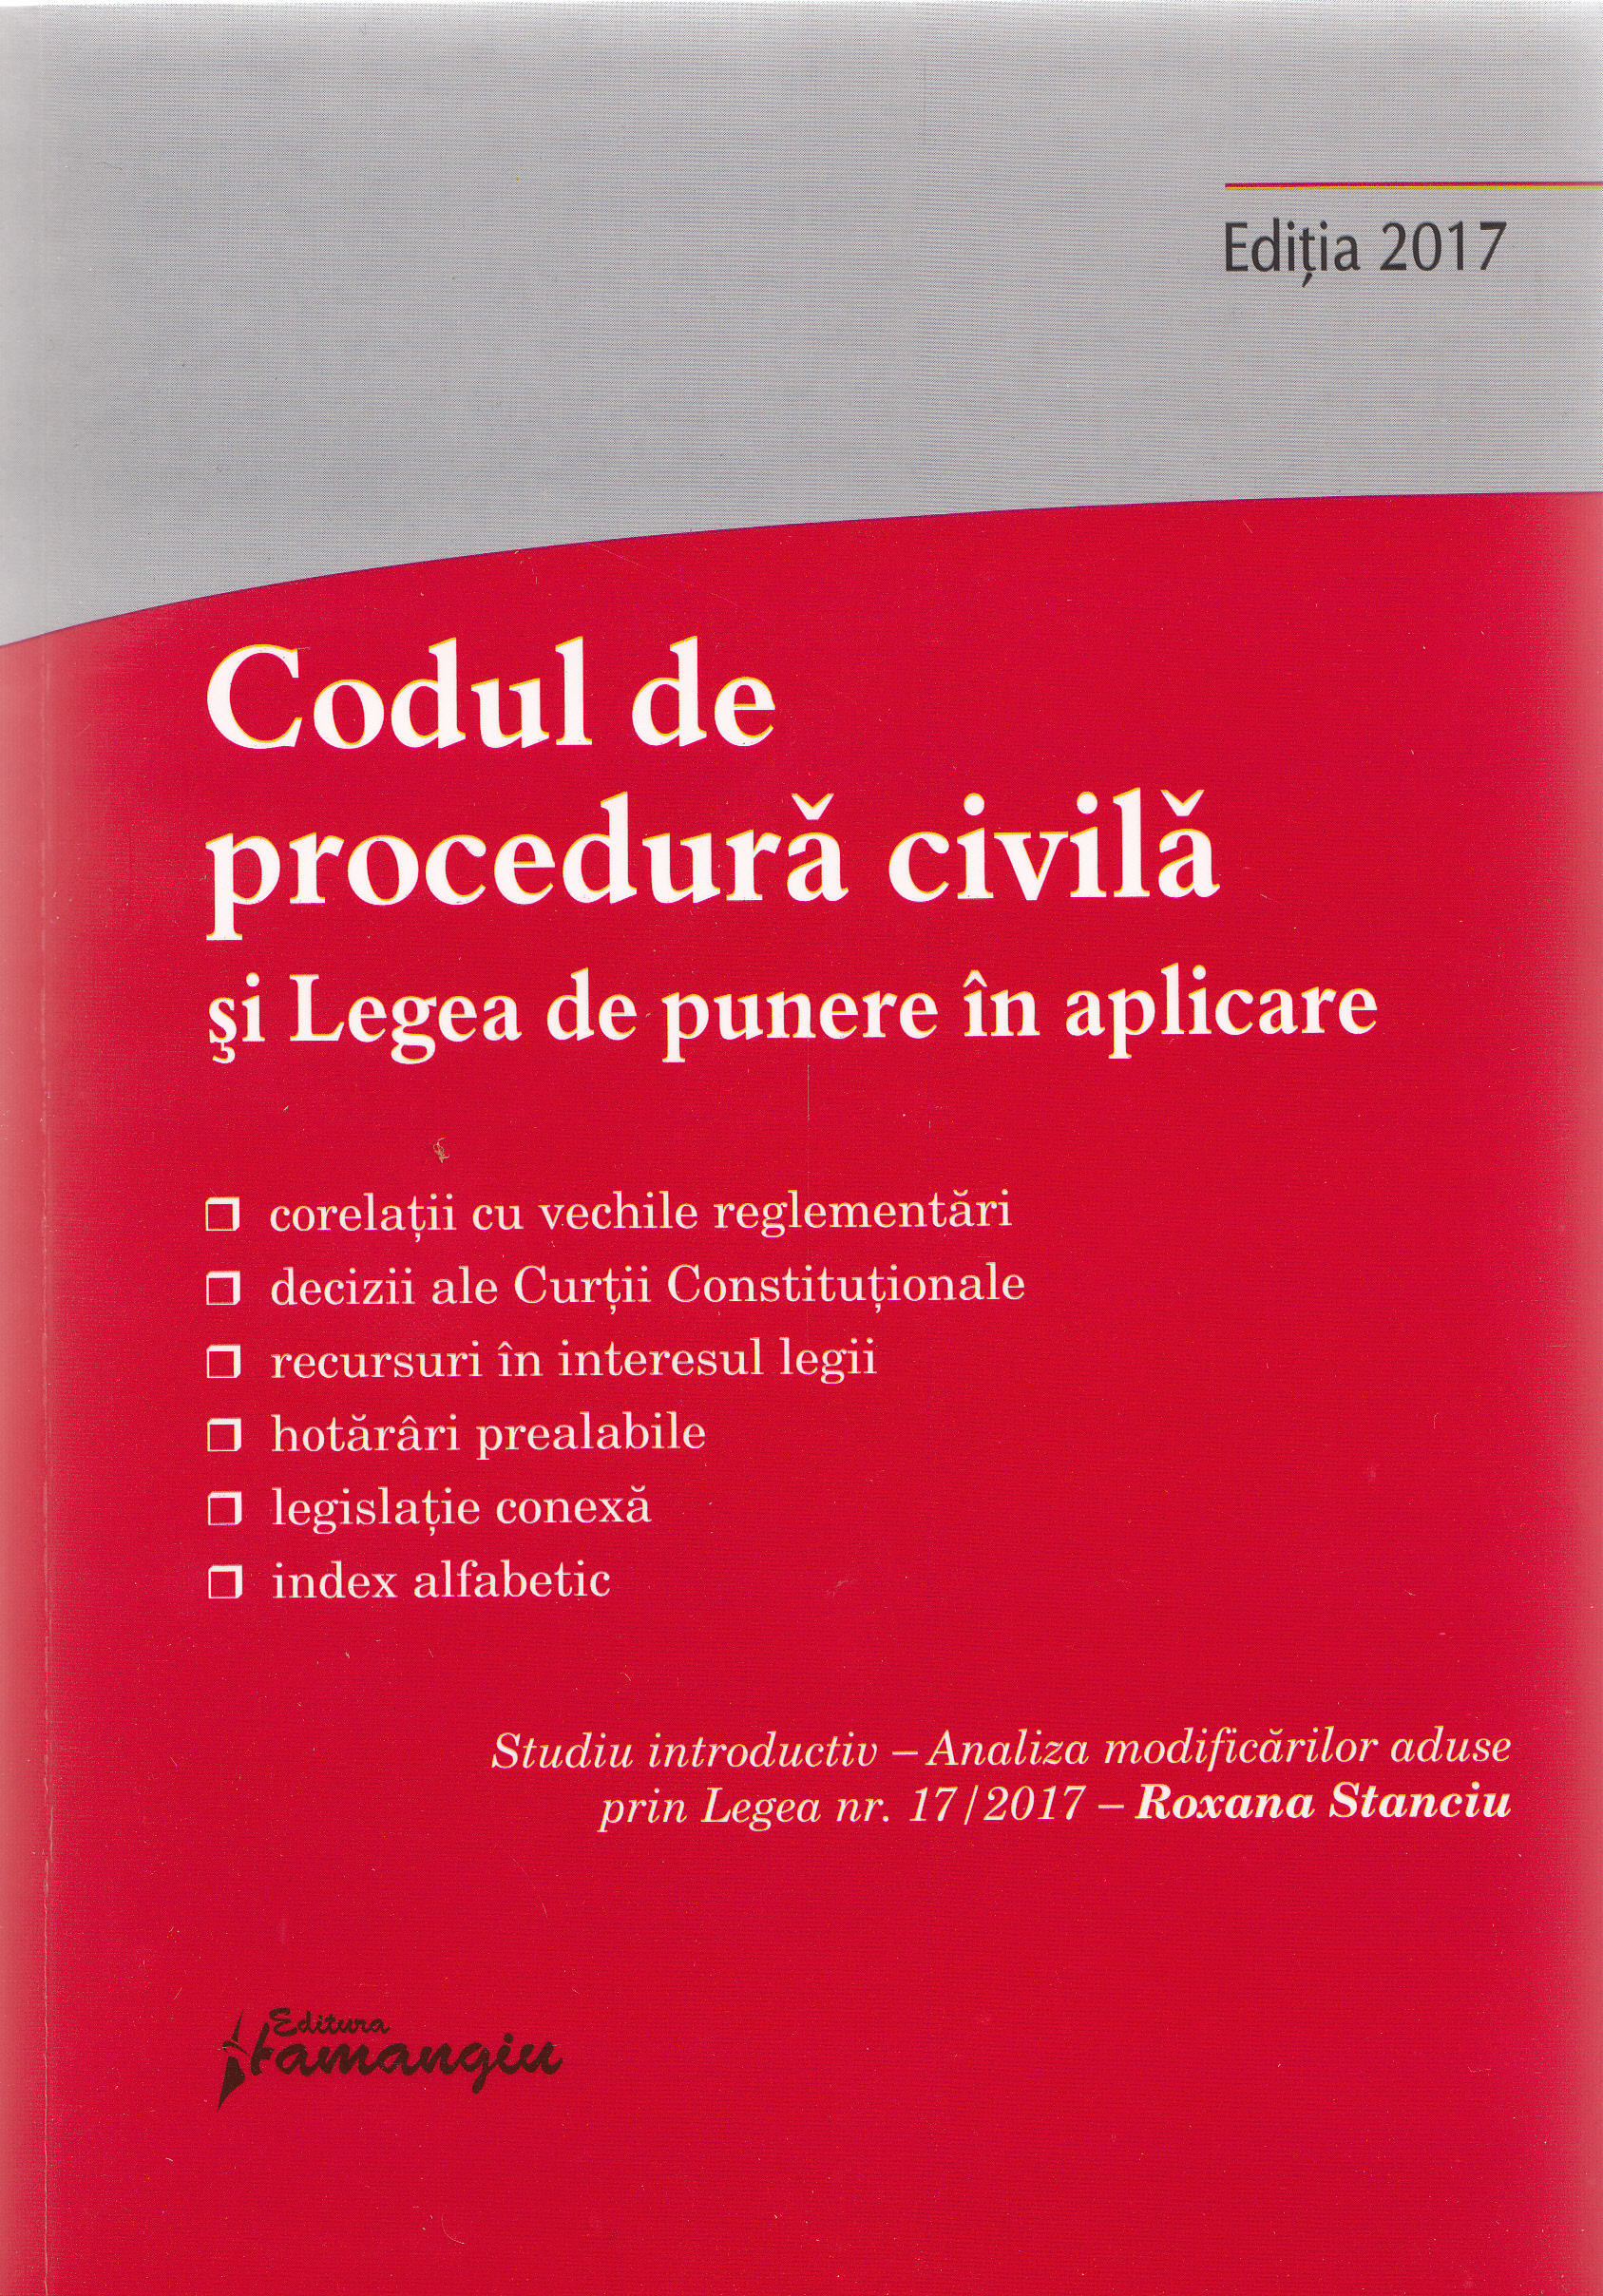 Codul de procedura civila si legea de punere in aplicare Ed. 2017